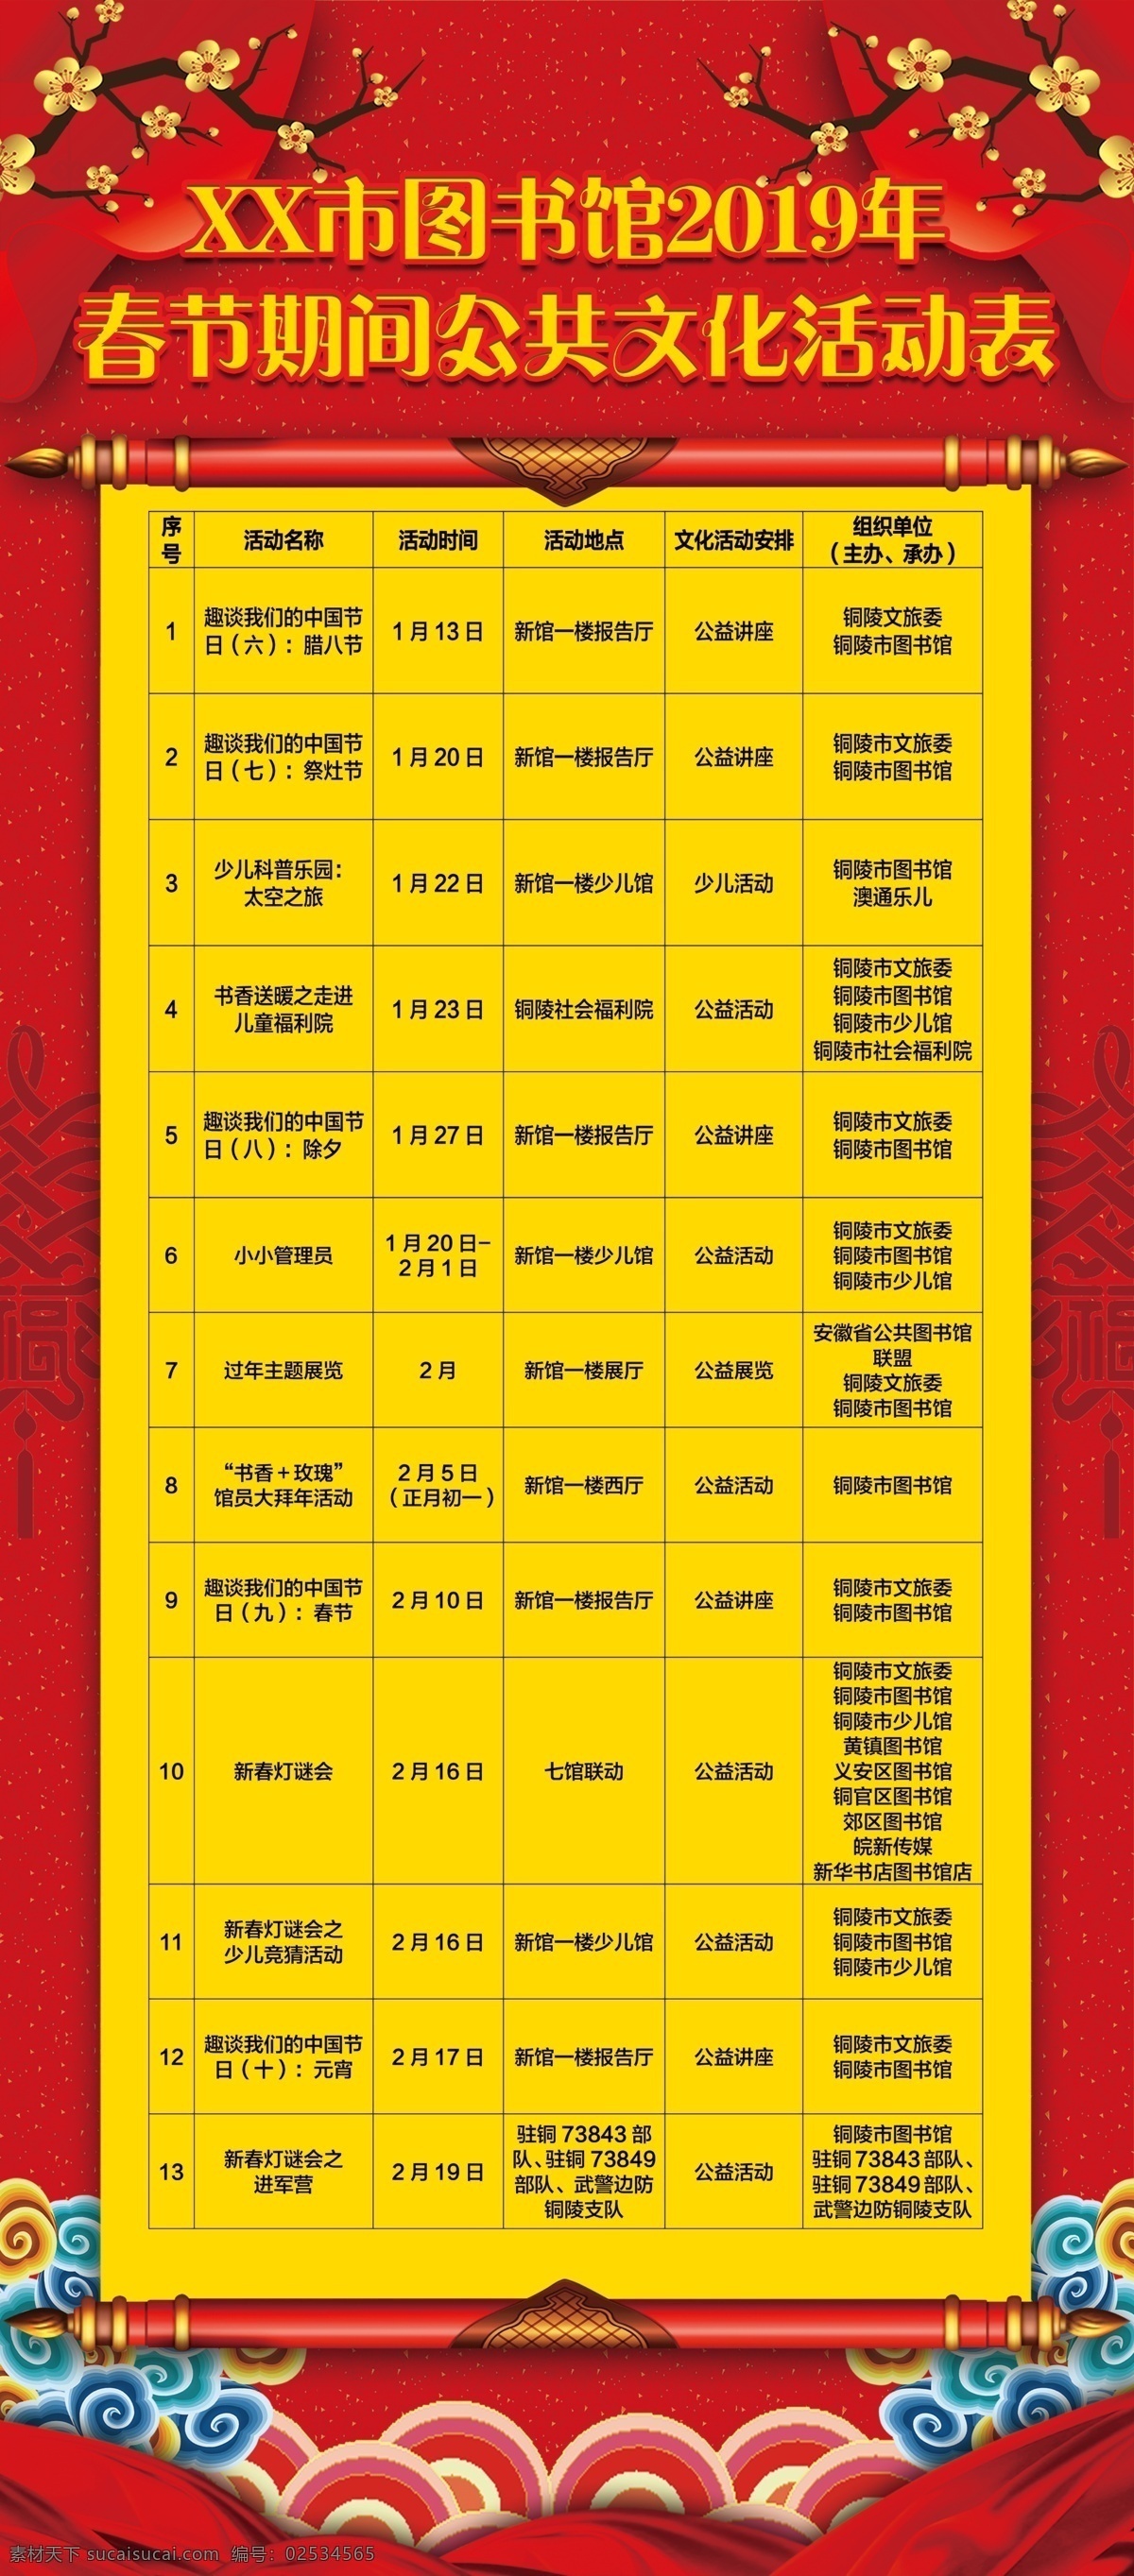 春节 活动 预告 表 红色 喜庆海报 预告表 喜庆 海报